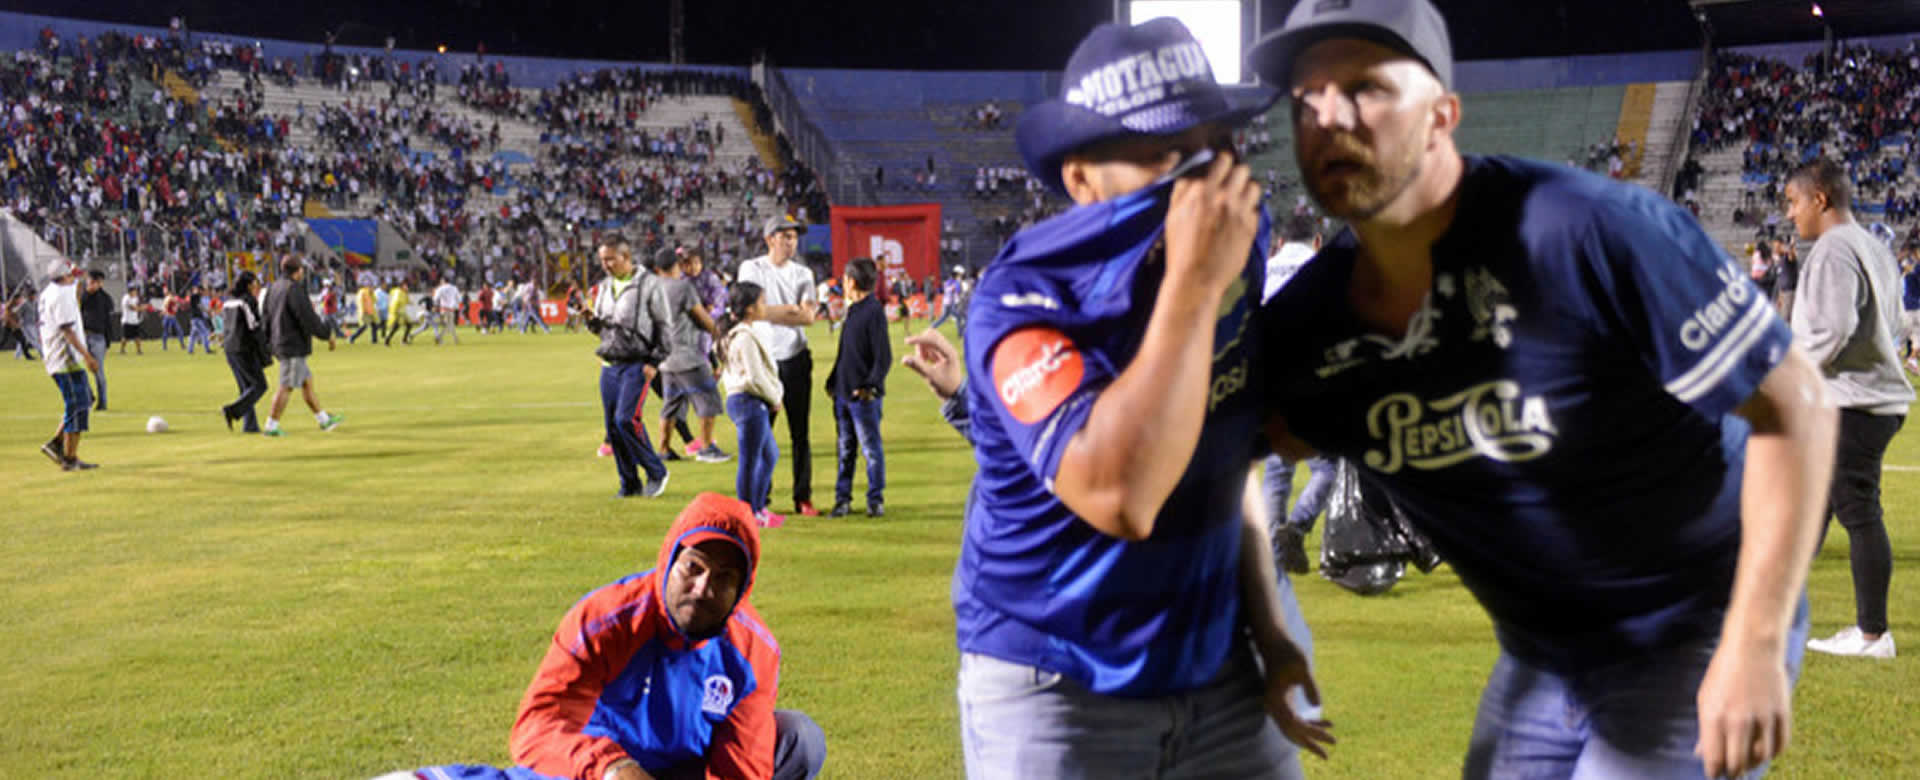 Caos tras enfrentamiento previo al clásico del fútbol hondureño